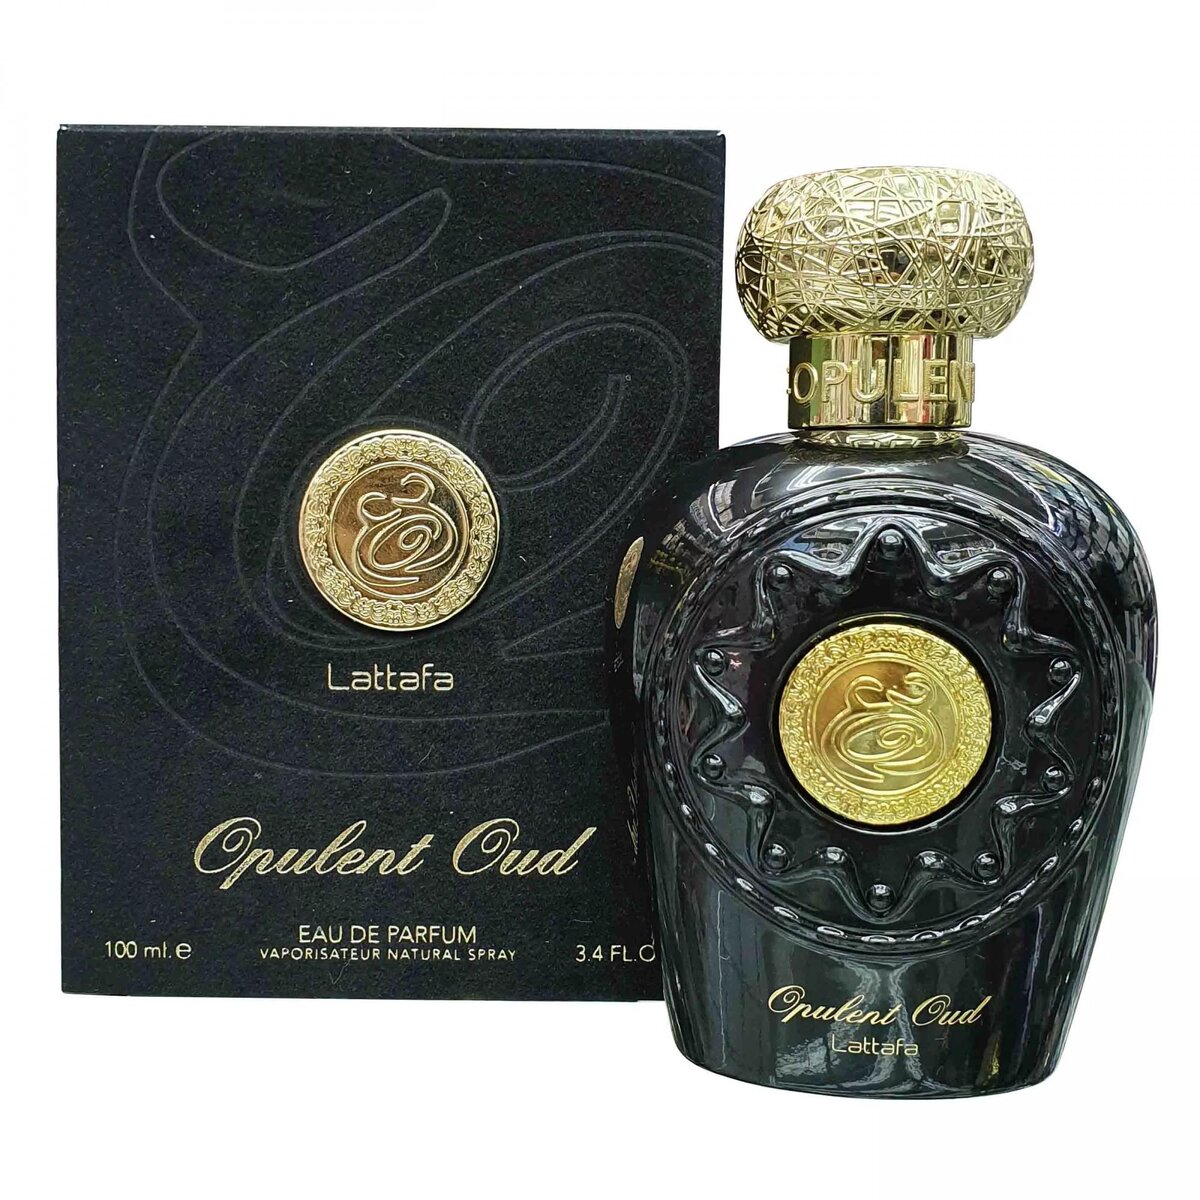 Opulent Oud - это теплый и чувственный унисекс-парфюм, созданный в 2018 году известным арабским парфюмерным домом Lattafa.